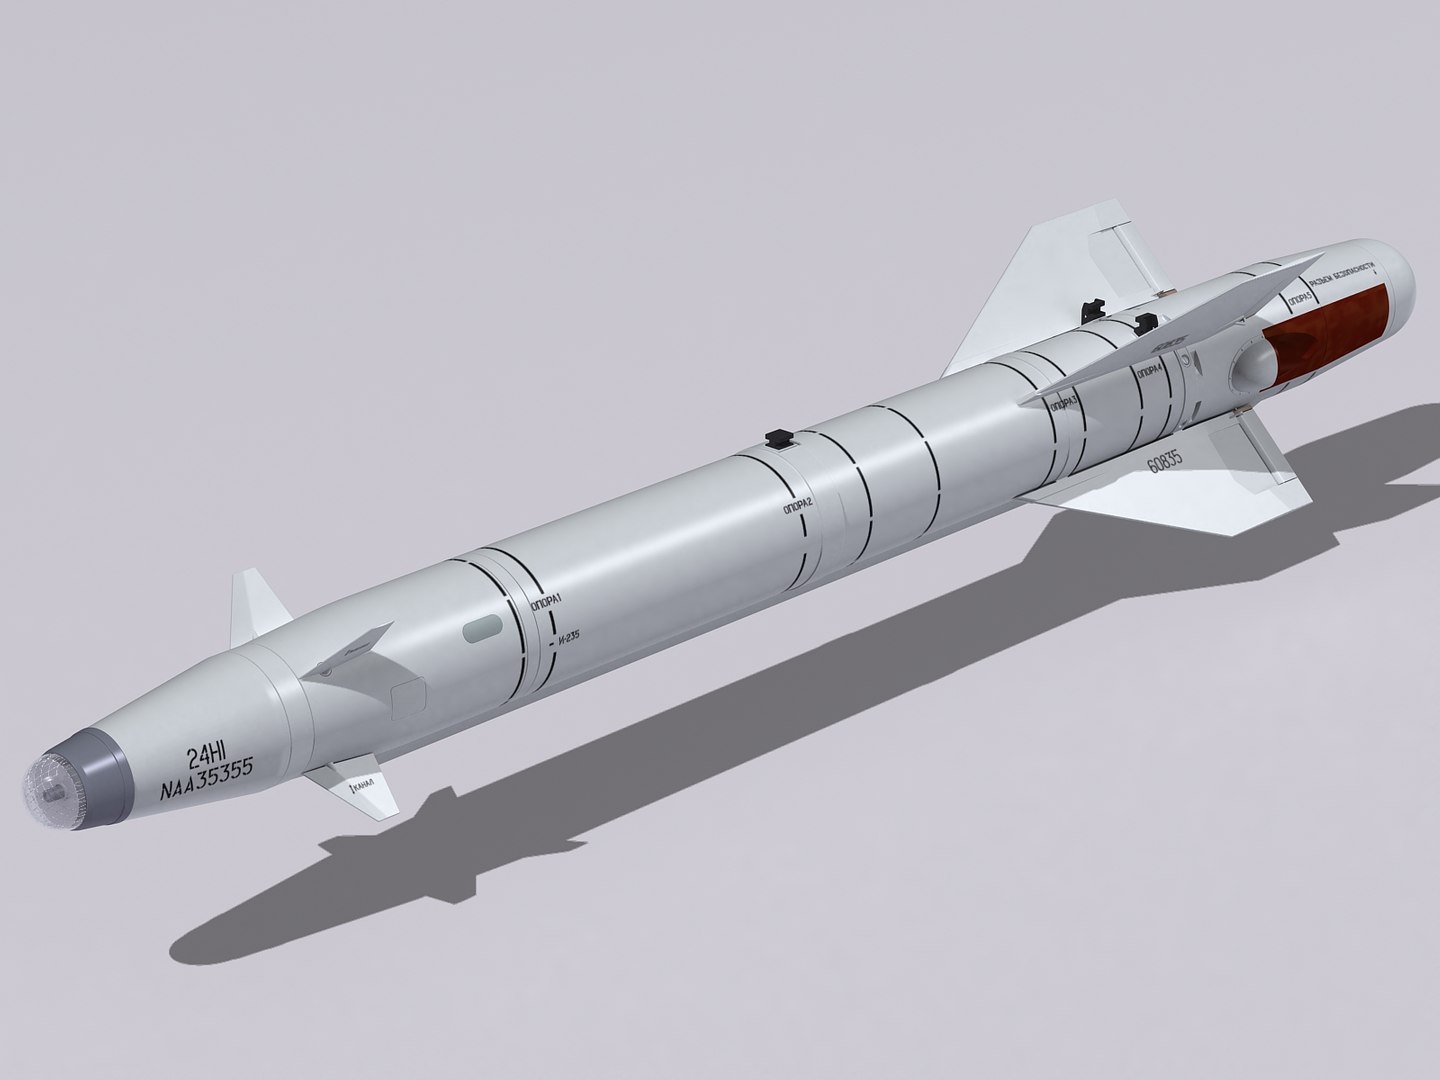 Х 25 м. Х-38 ракета. Ракета х-25мл. Kh25 ракета. Х-25 ракета.